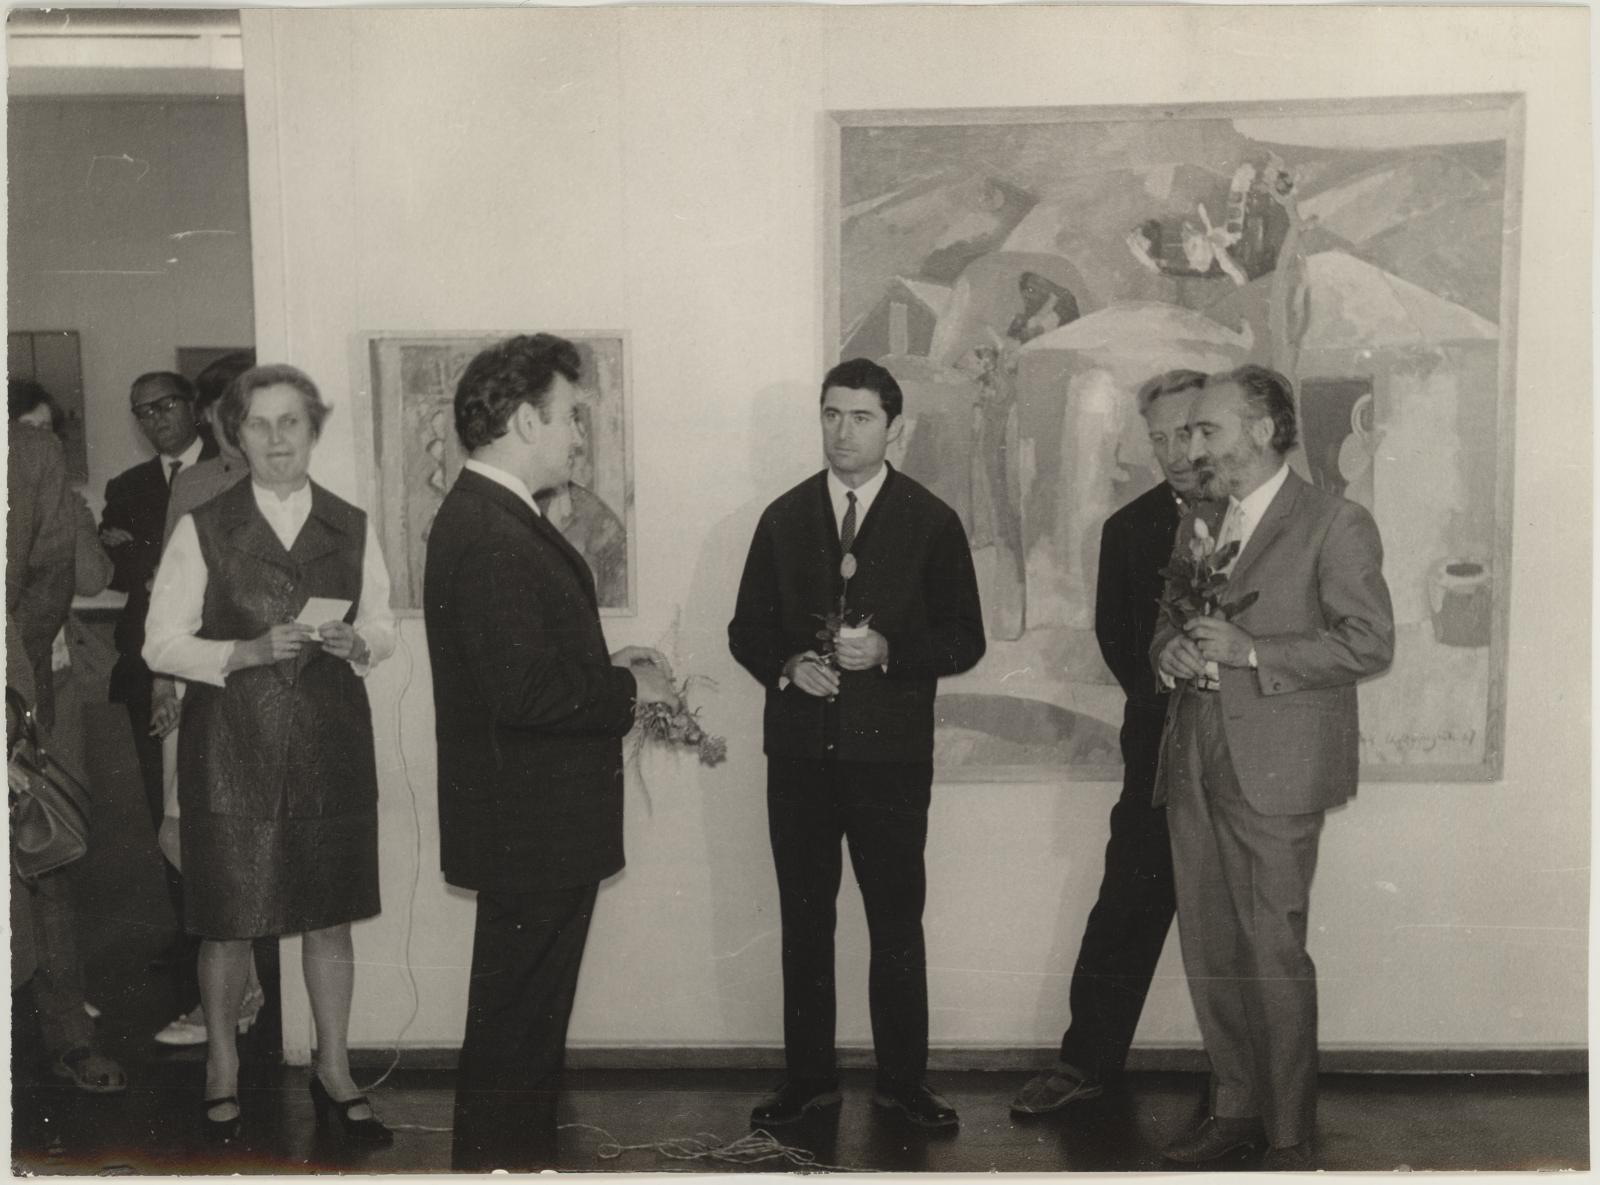 Armeenia kunstnike grupinäituse avamine 28.08.1970. II korrusel.